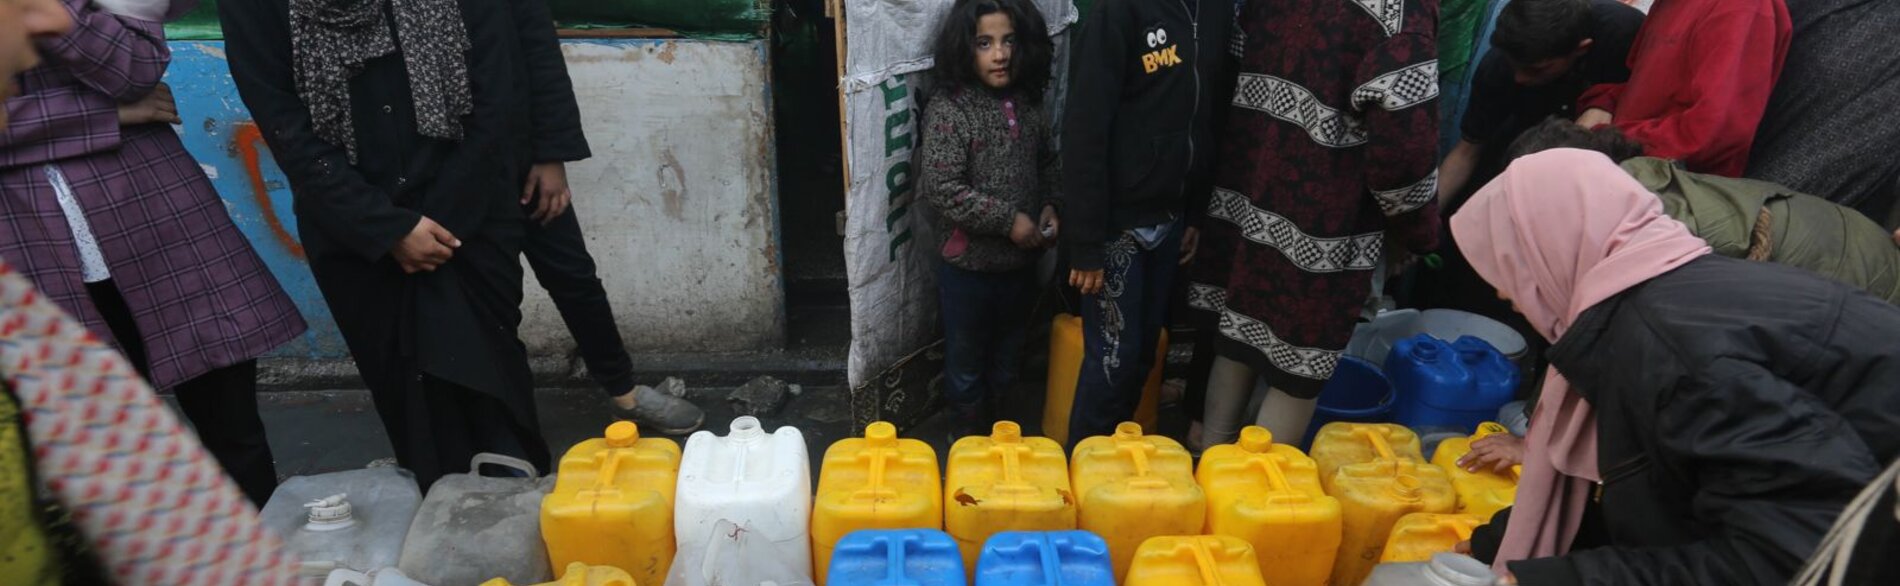 تفيد منظمة اليونيسف بأن أربعًا من كل خمس أسر في غزة تفتقر إلى إمكانية الحصول على مياه نظيفة وبطريقة آمنة. ووفقًا لتقييم أُعد مؤخرًا، لا يحصل النازحون إلا على لترين من المياه يوميا لكل فرد، وهي كمية تقل كثيرًا عن الحد الأدنى الموصى به والبالغ 15 لترًا. تصوير وكالة الأونروا.